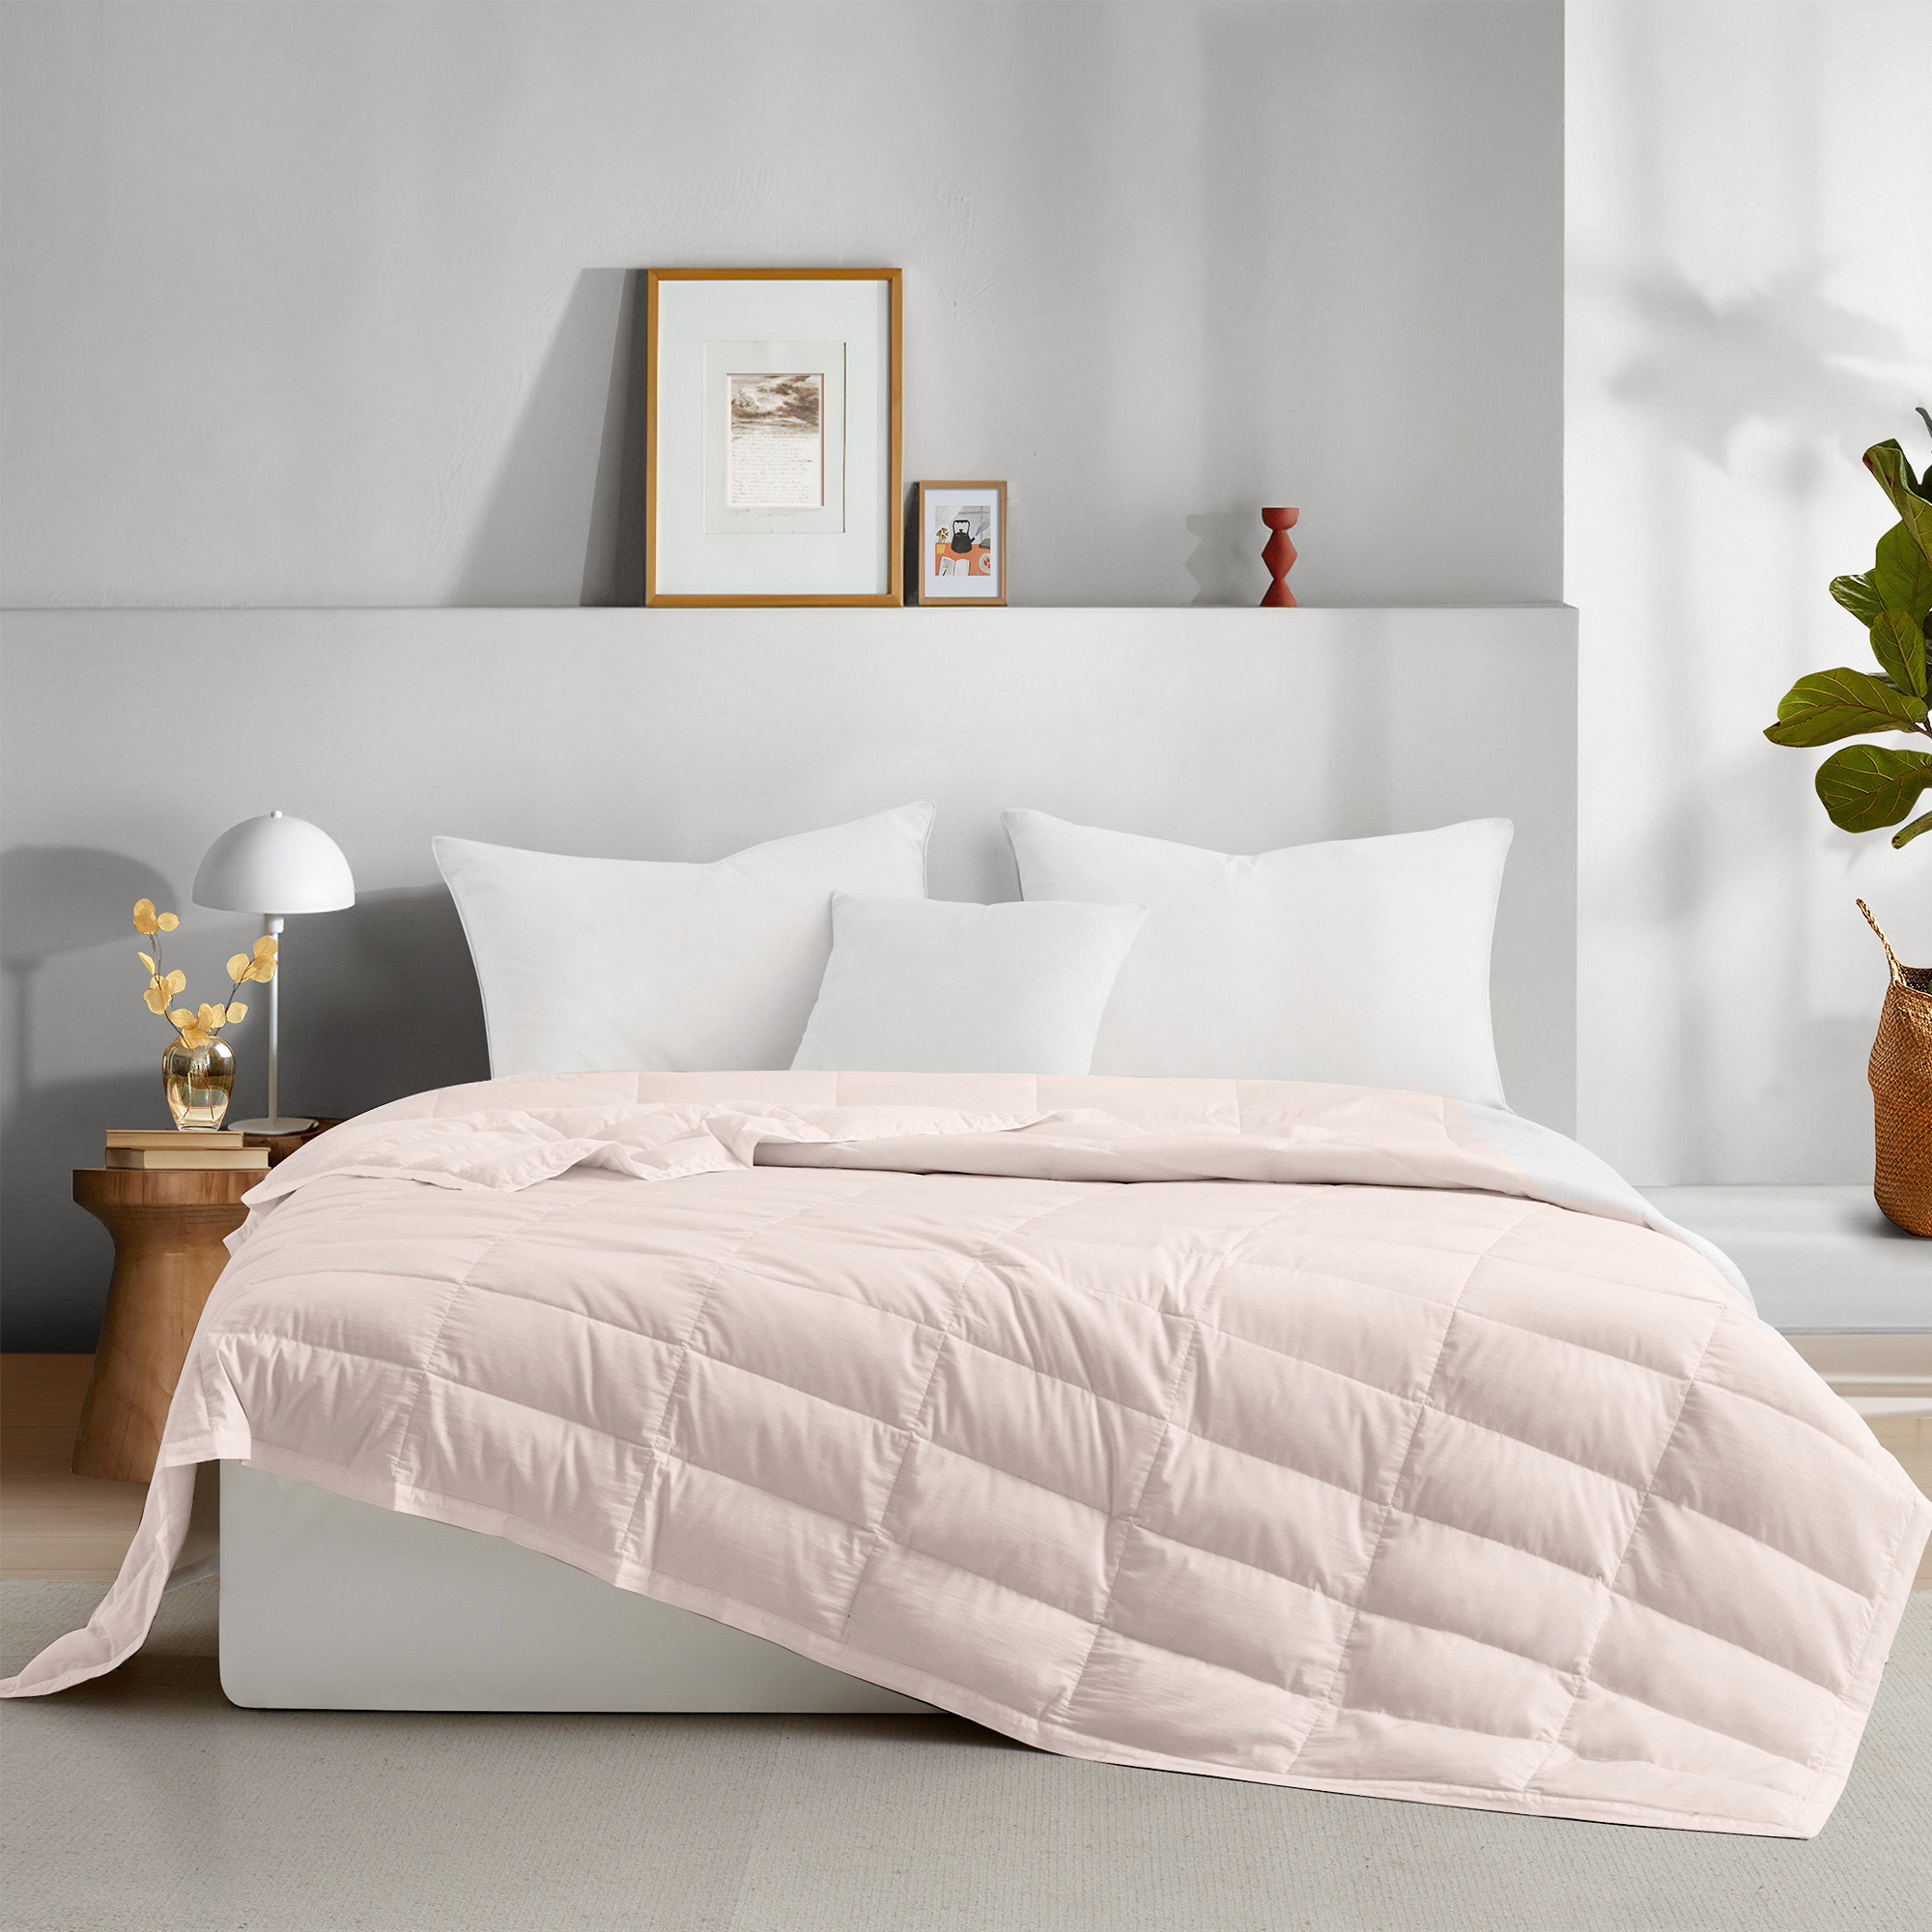 TENCELâ¢ Lyocell Lightweight Cooling Down Blanket-Luxurious Comfort Summer Blanket - Shell Pink, Full/Queen